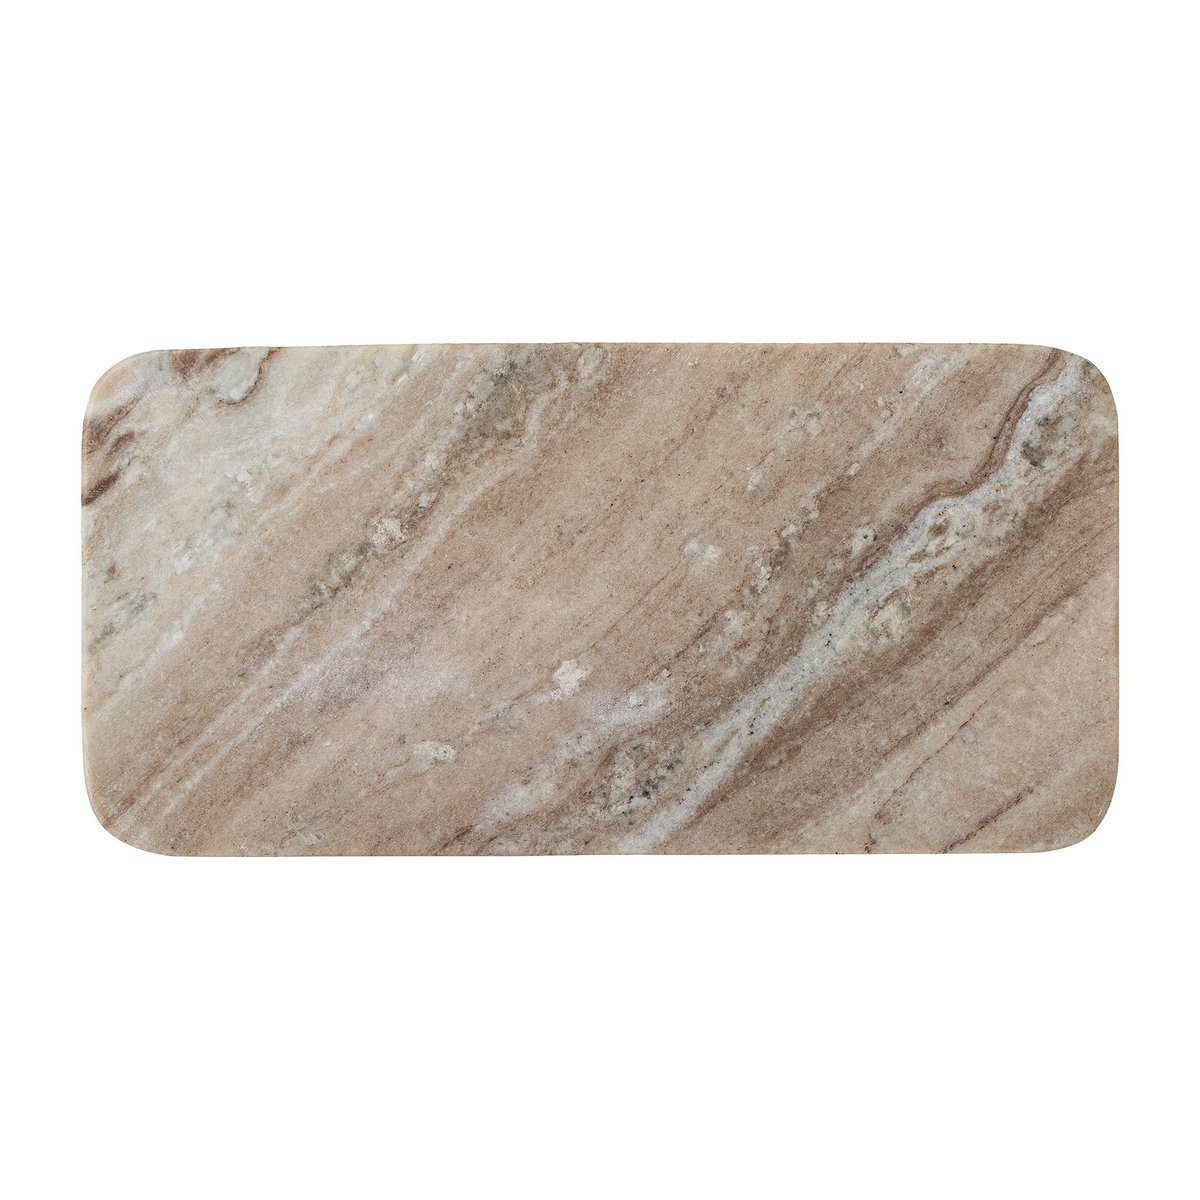 bloomingville manuela plateau marbre 15x30,5 cm marron